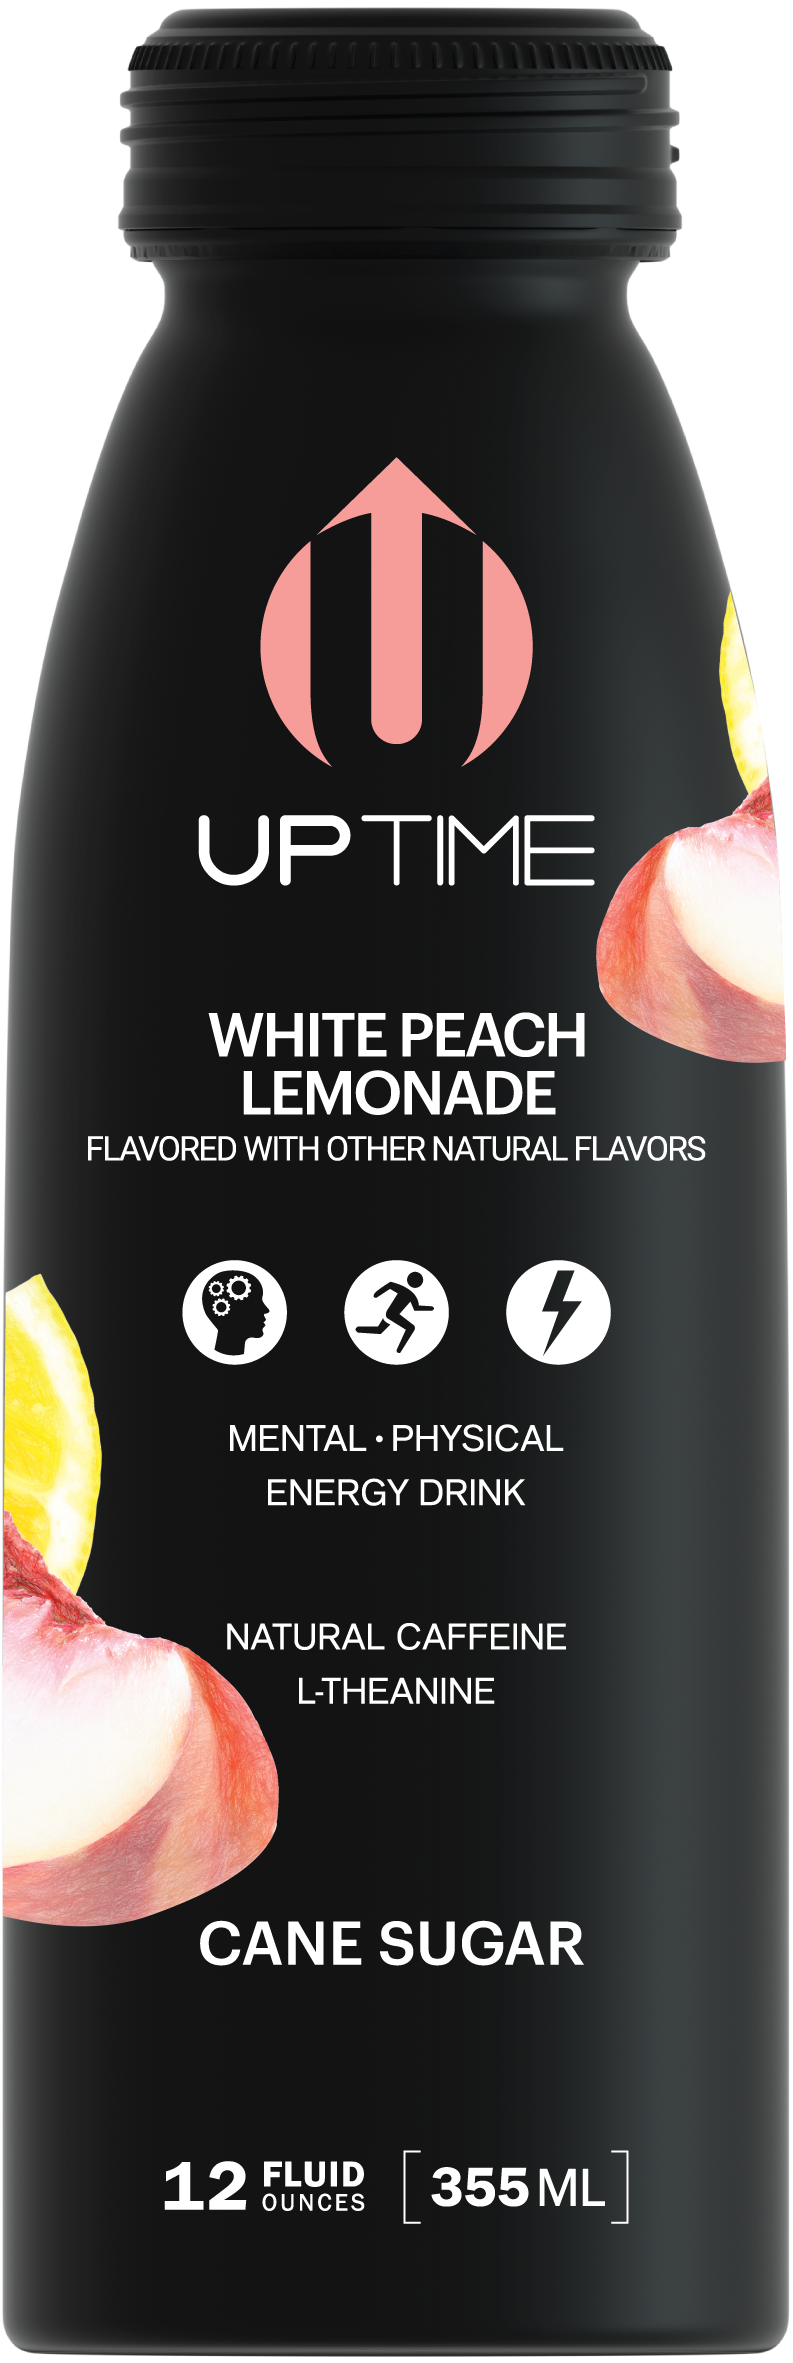 UPTIME Premium Energy Drink, White Peach Lemonade - Cane Sugar, 12oz Bottles - Multi Pack